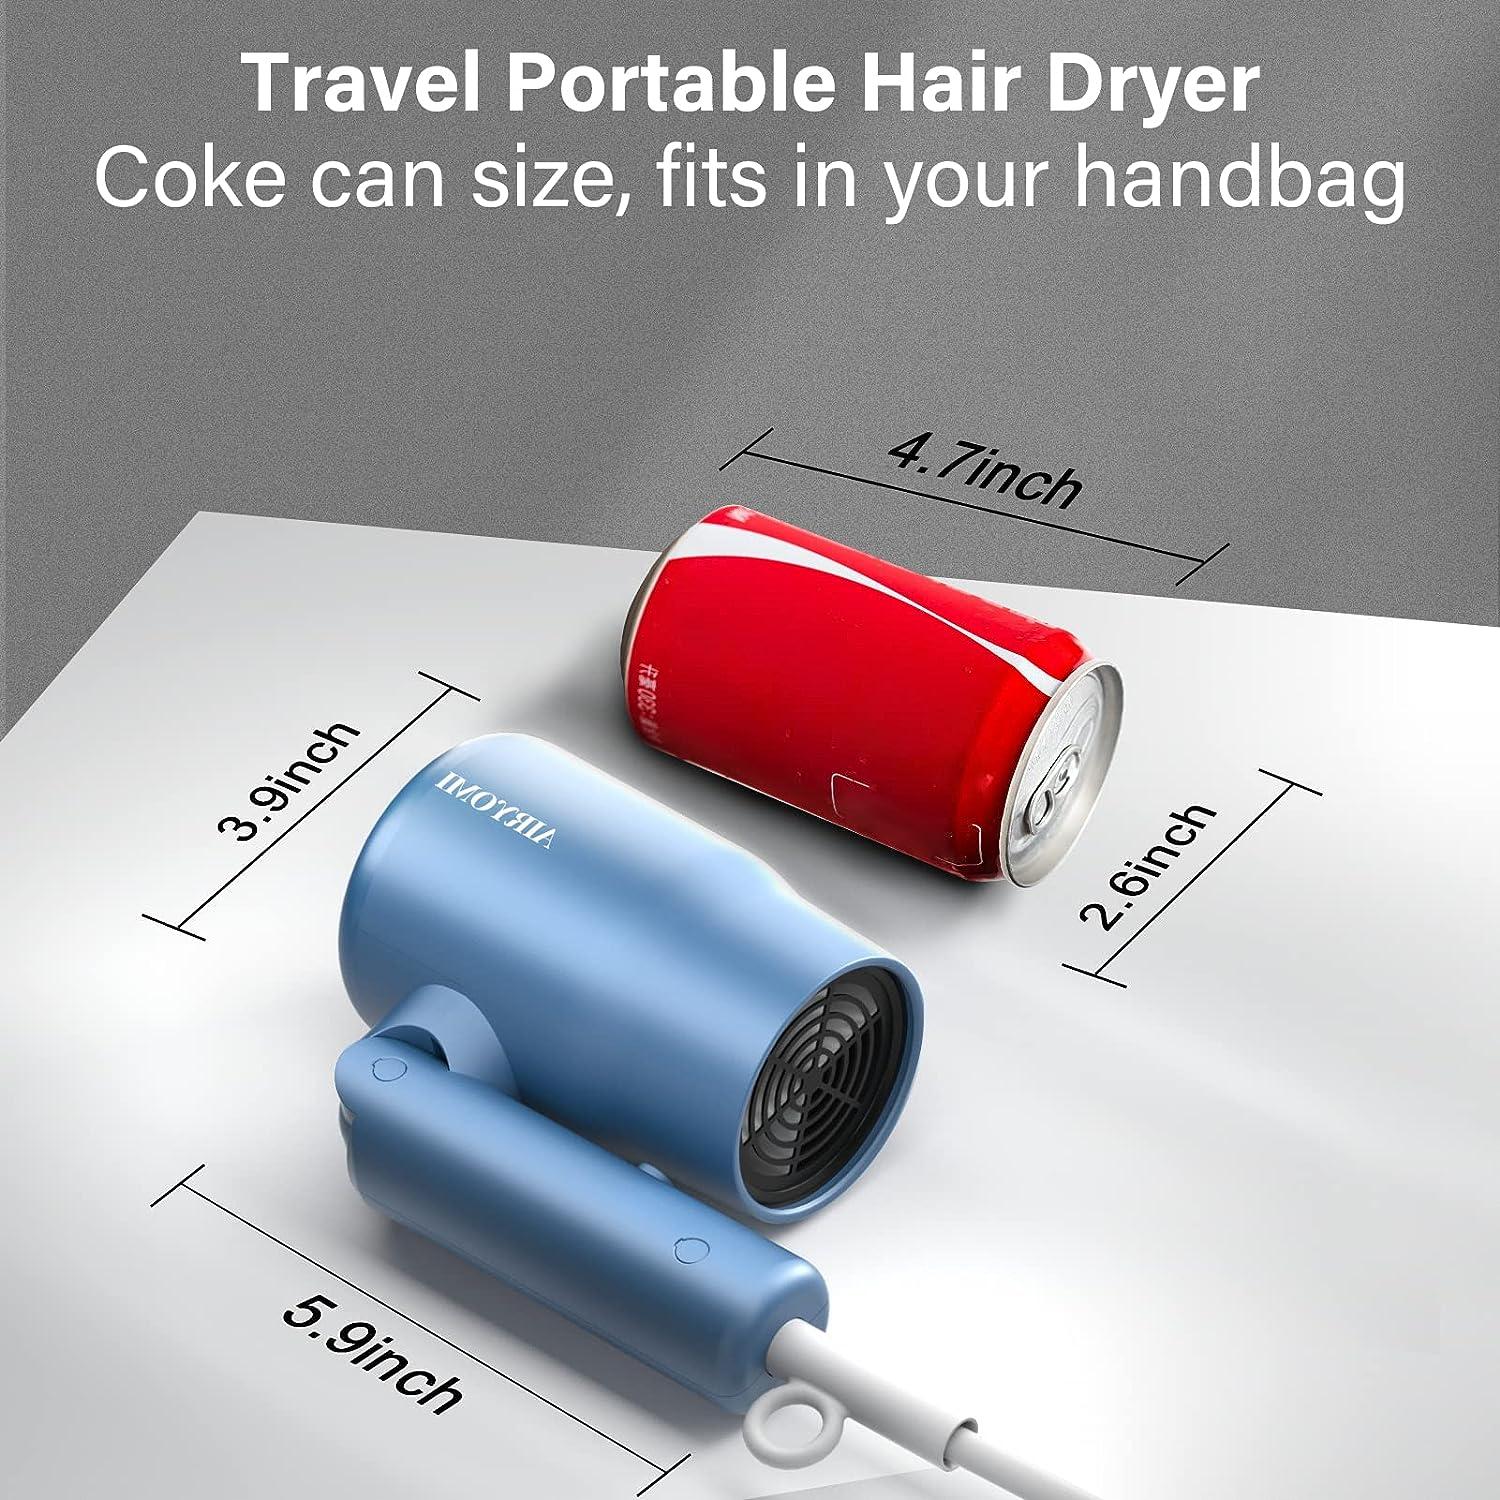 HOT Brand Air-O-Dry mini Portable Electric Clothes Dryer Bag Blue 110v/220v